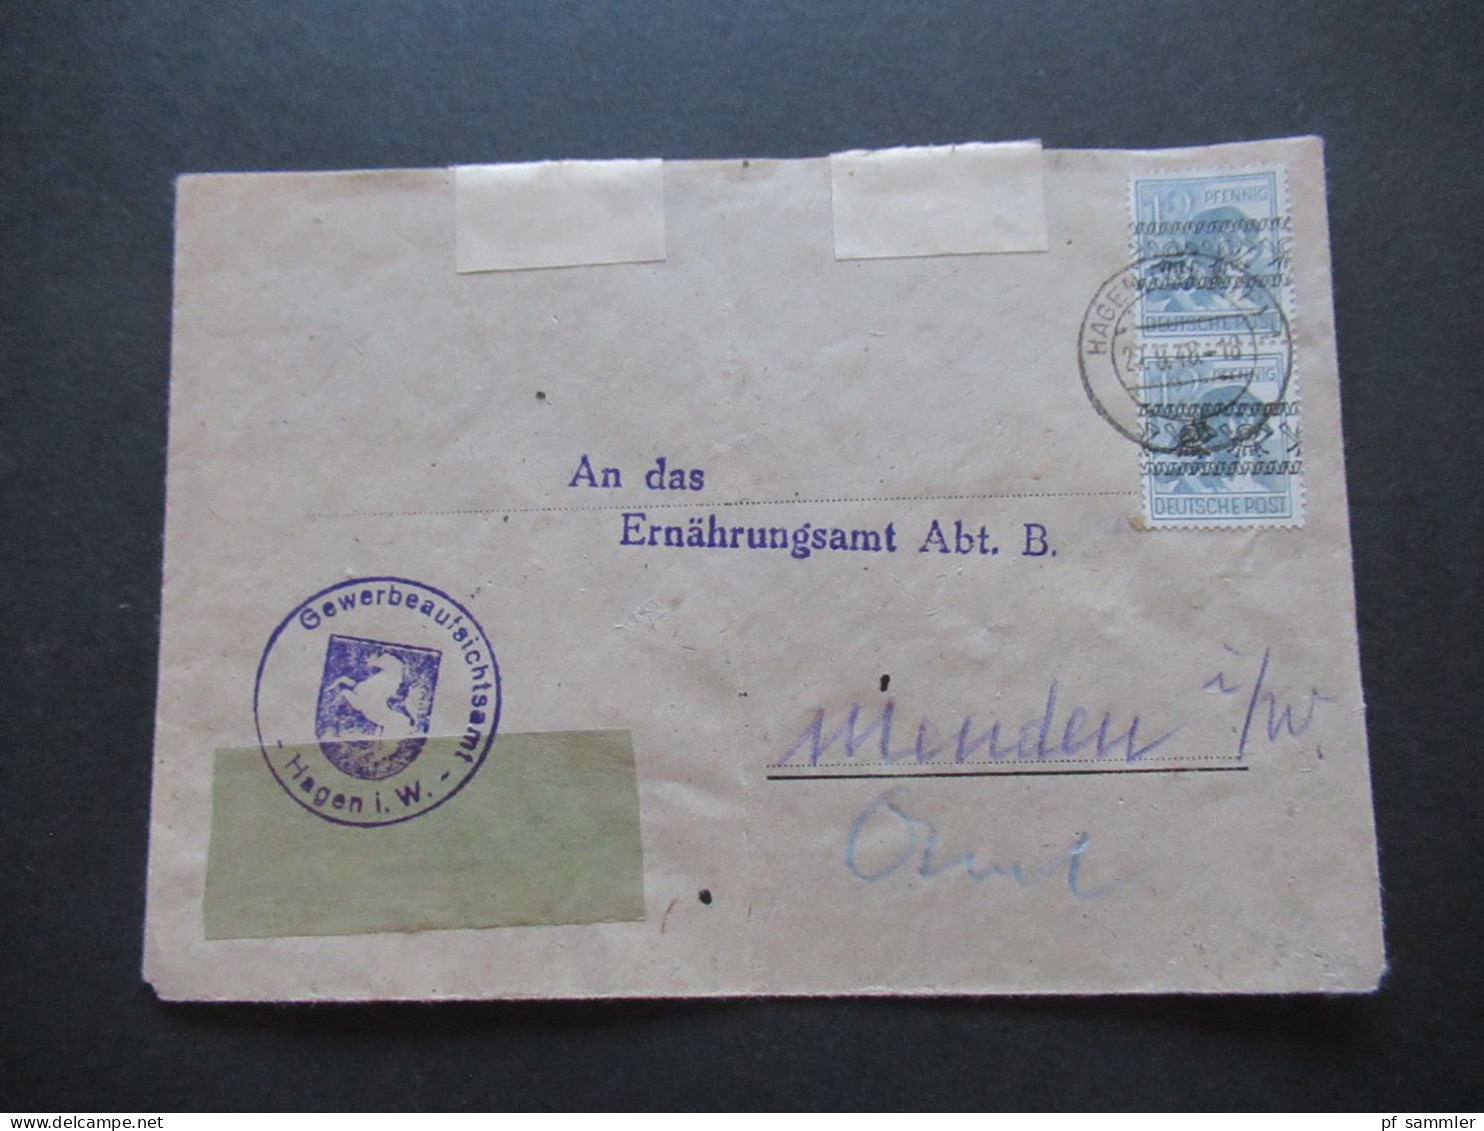 27.8.1948 Bizone Nr.40 I (2) MeF Stempel Gewerbeaufsichtsamt Hagen In Westfalen An Das Ernährungsamt In Menden - Briefe U. Dokumente